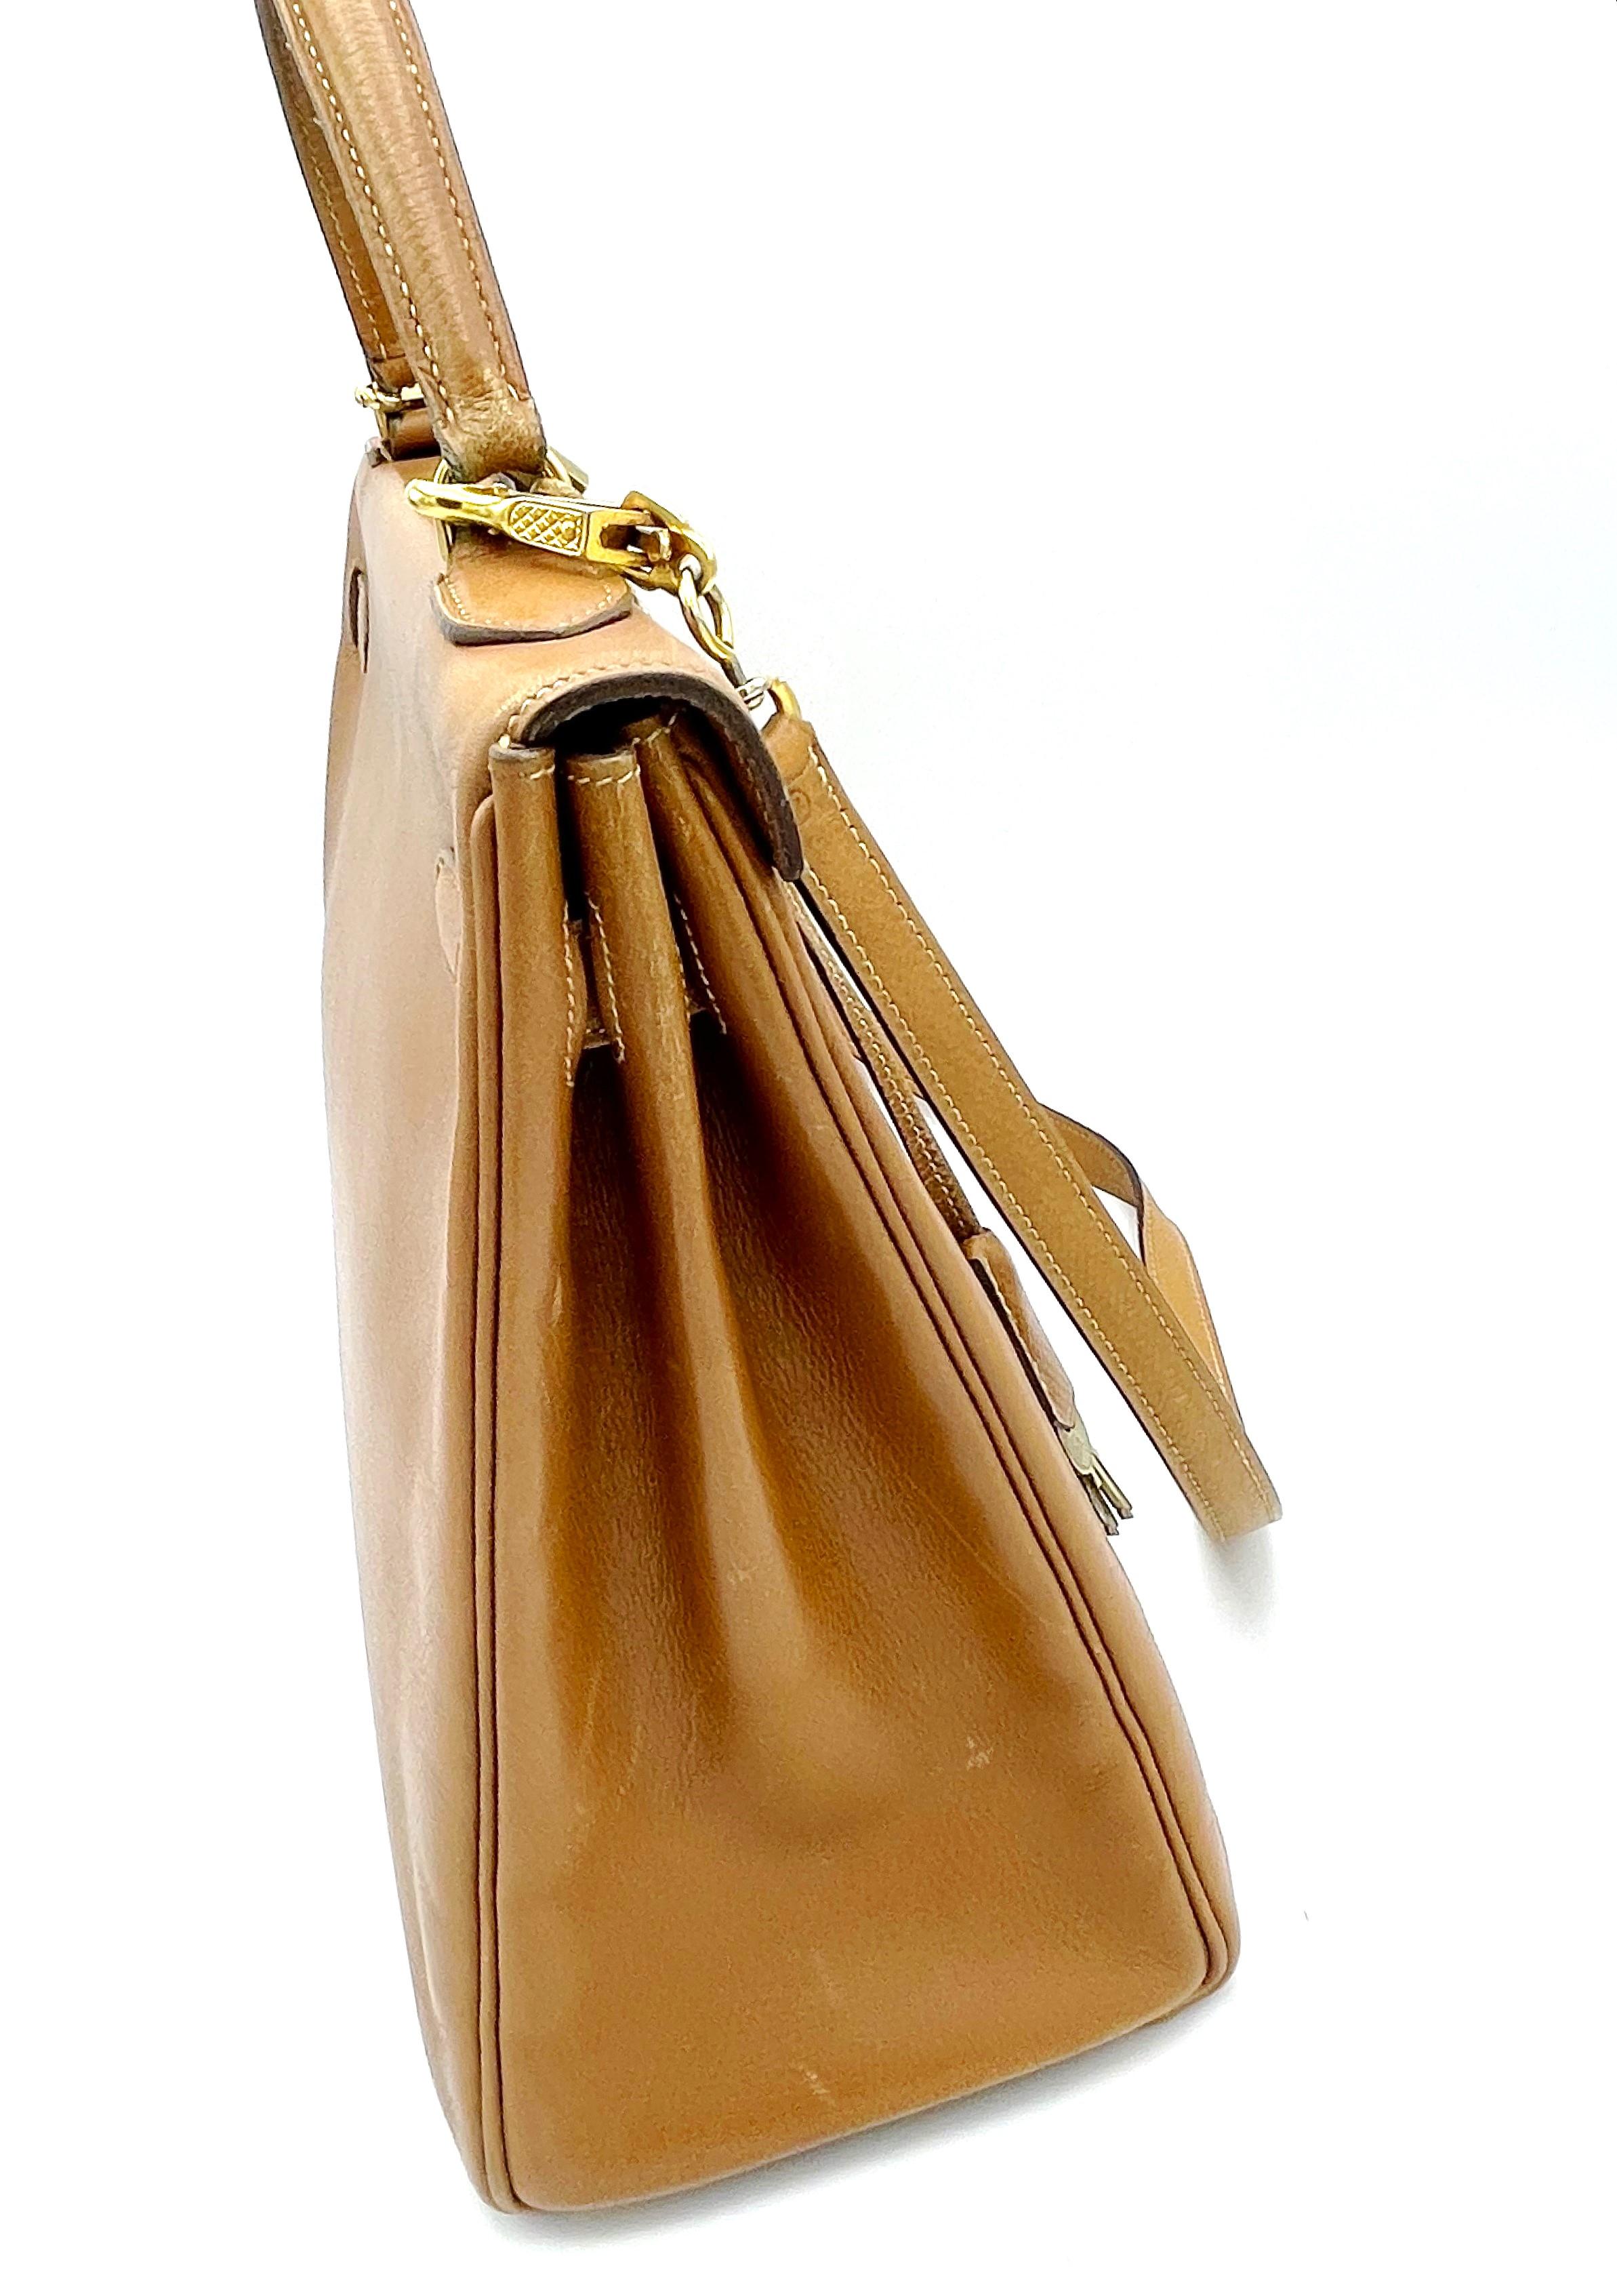 HERMÉS 2 way Kelly bag, Retourne,  32cm, Courchevel  Leather gold, 1982 - L   For Sale 2